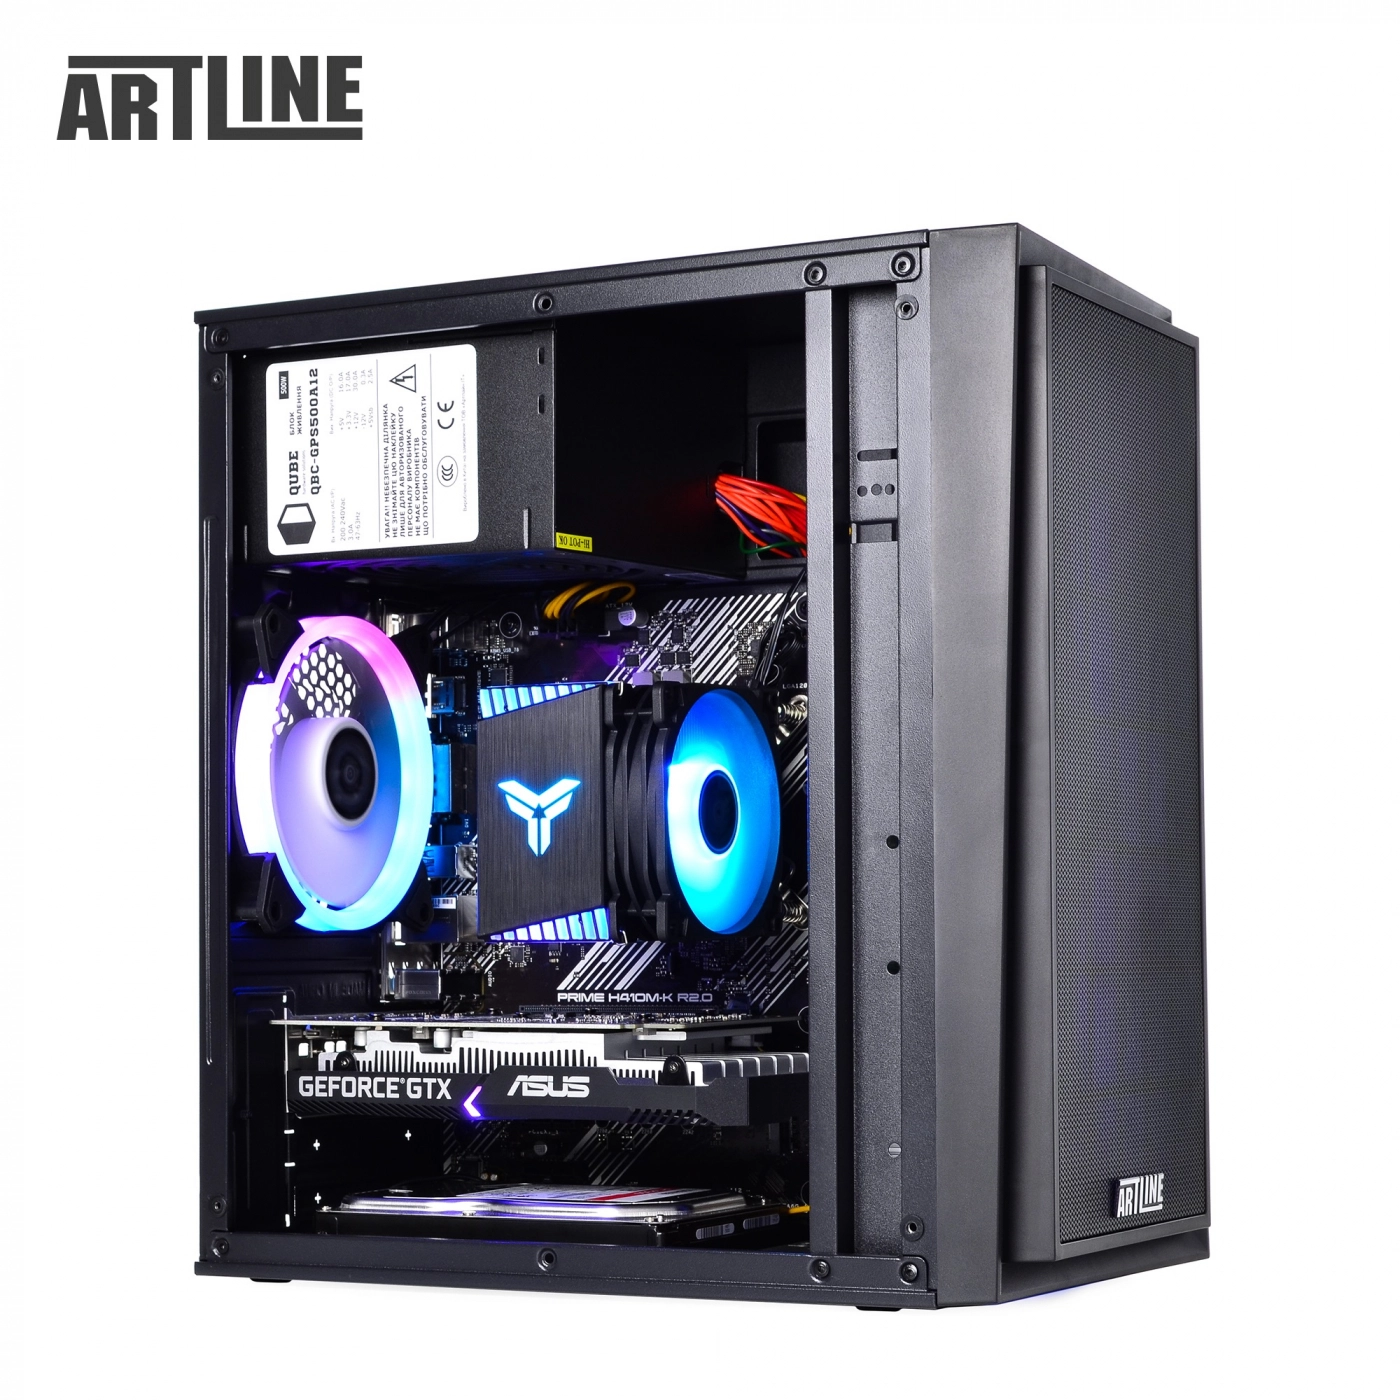 Купить Компьютер ARTLINE Gaming X43v30 - фото 13